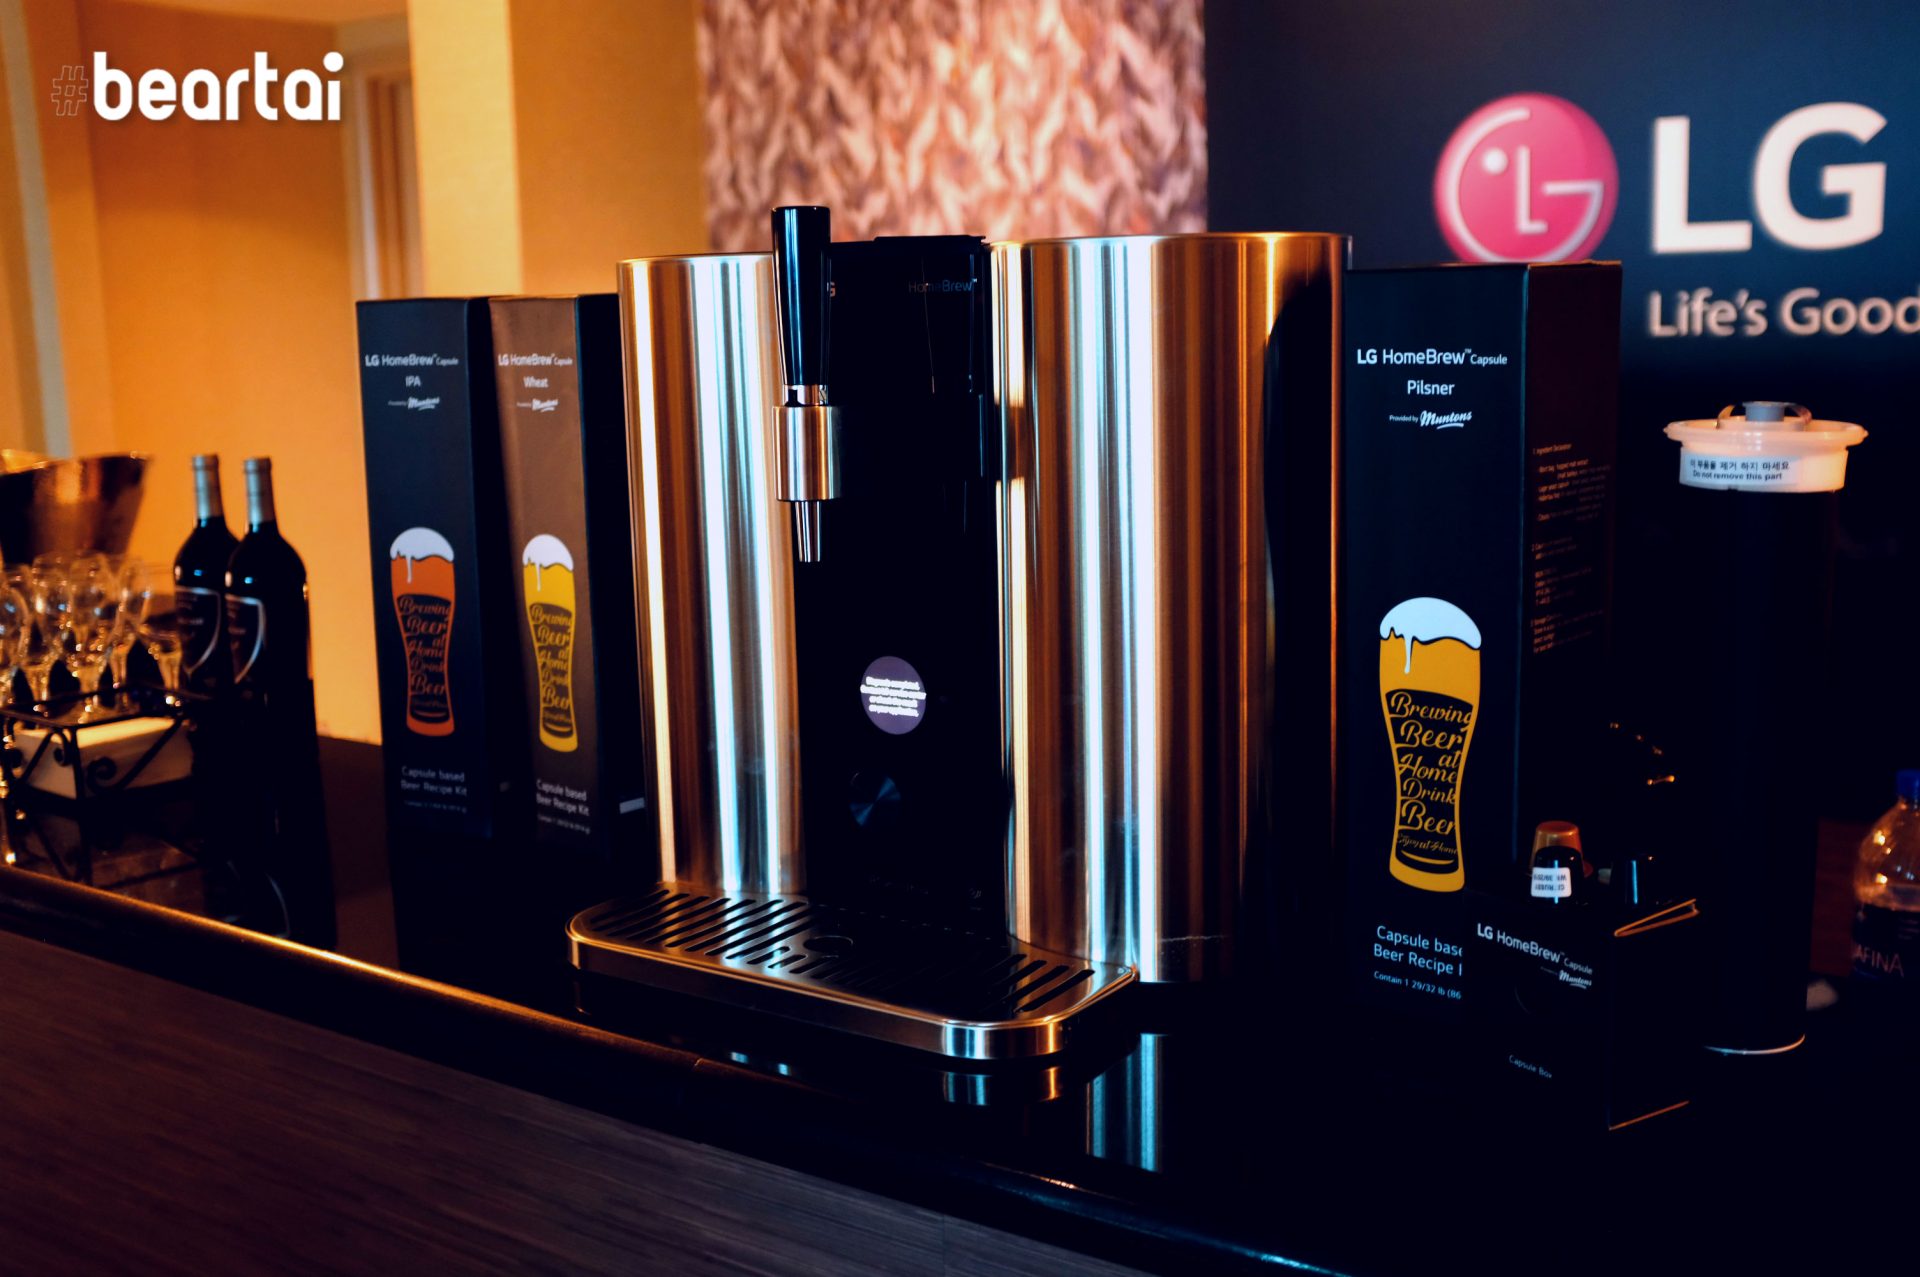 เกาหลีใต้ยกเว้นกฎเพื่อเปิดทางให้ LG เป็นเจ้าภาพจัดงานชิมเบียร์ส่งเสริมเครื่องผลิตเบียร์ในบ้าน